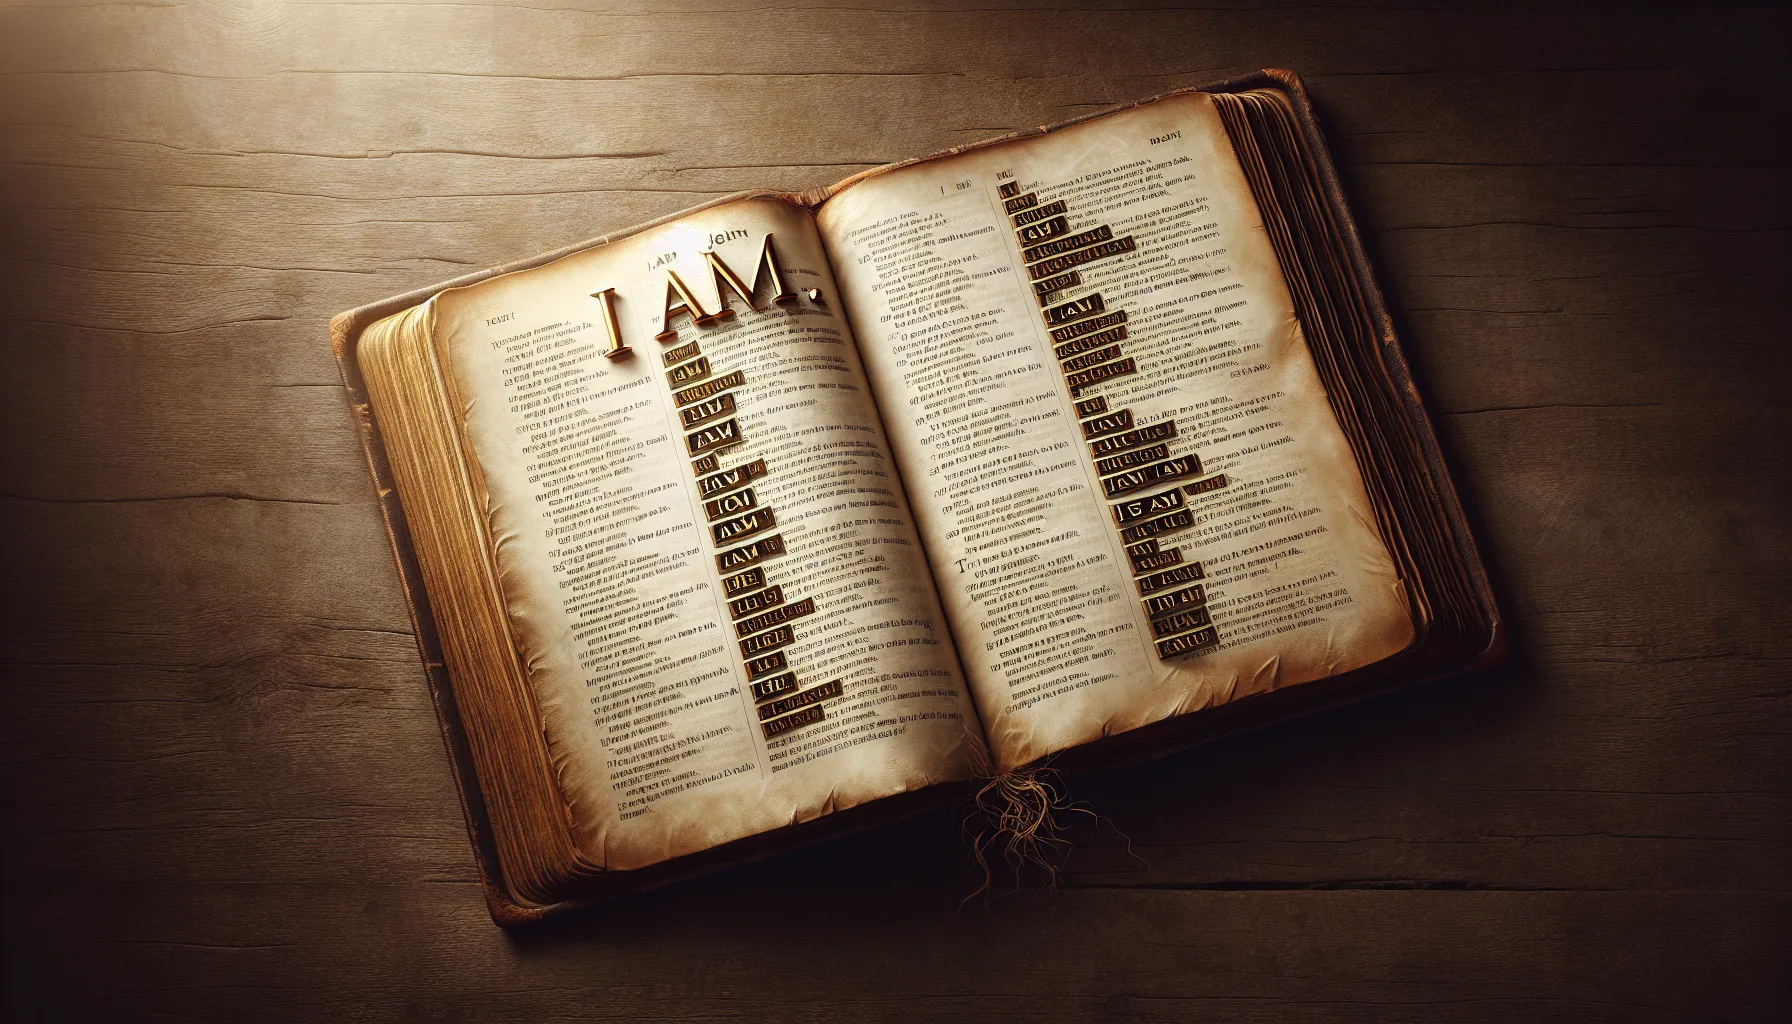 Imagen de un libro antiguo abierto con pasajes del Evangelio de Juan resaltando las afirmaciones de YO SOY en letras doradas.